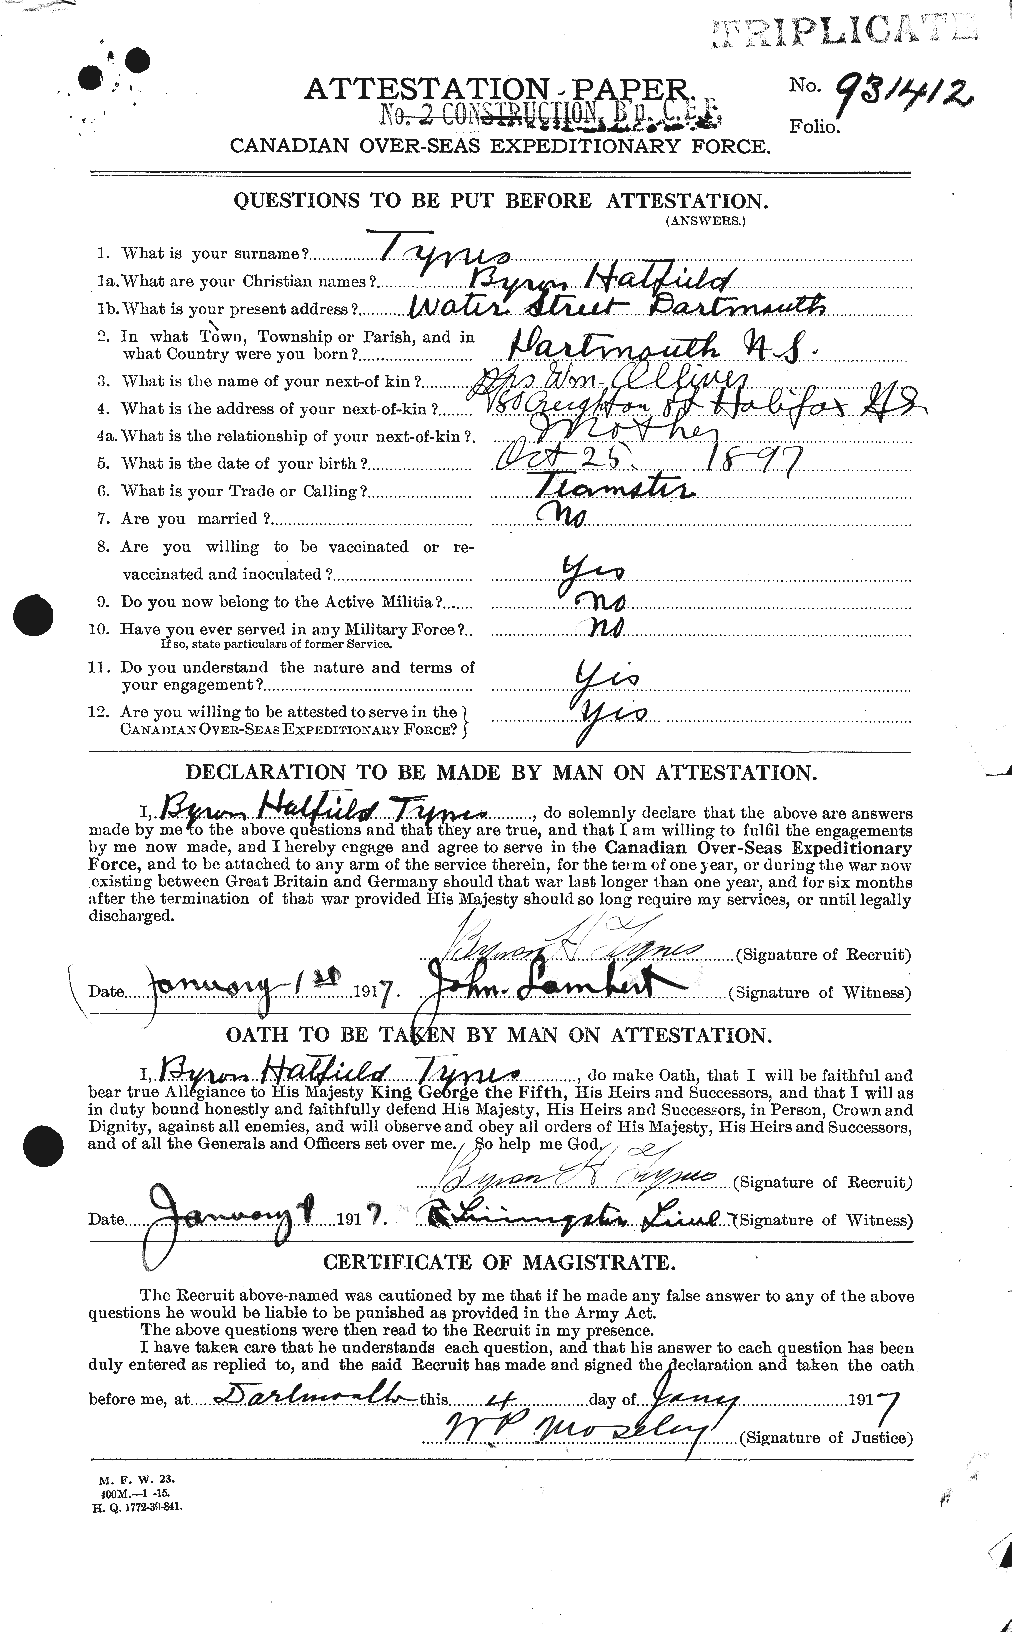 Dossiers du Personnel de la Première Guerre mondiale - CEC 644535a